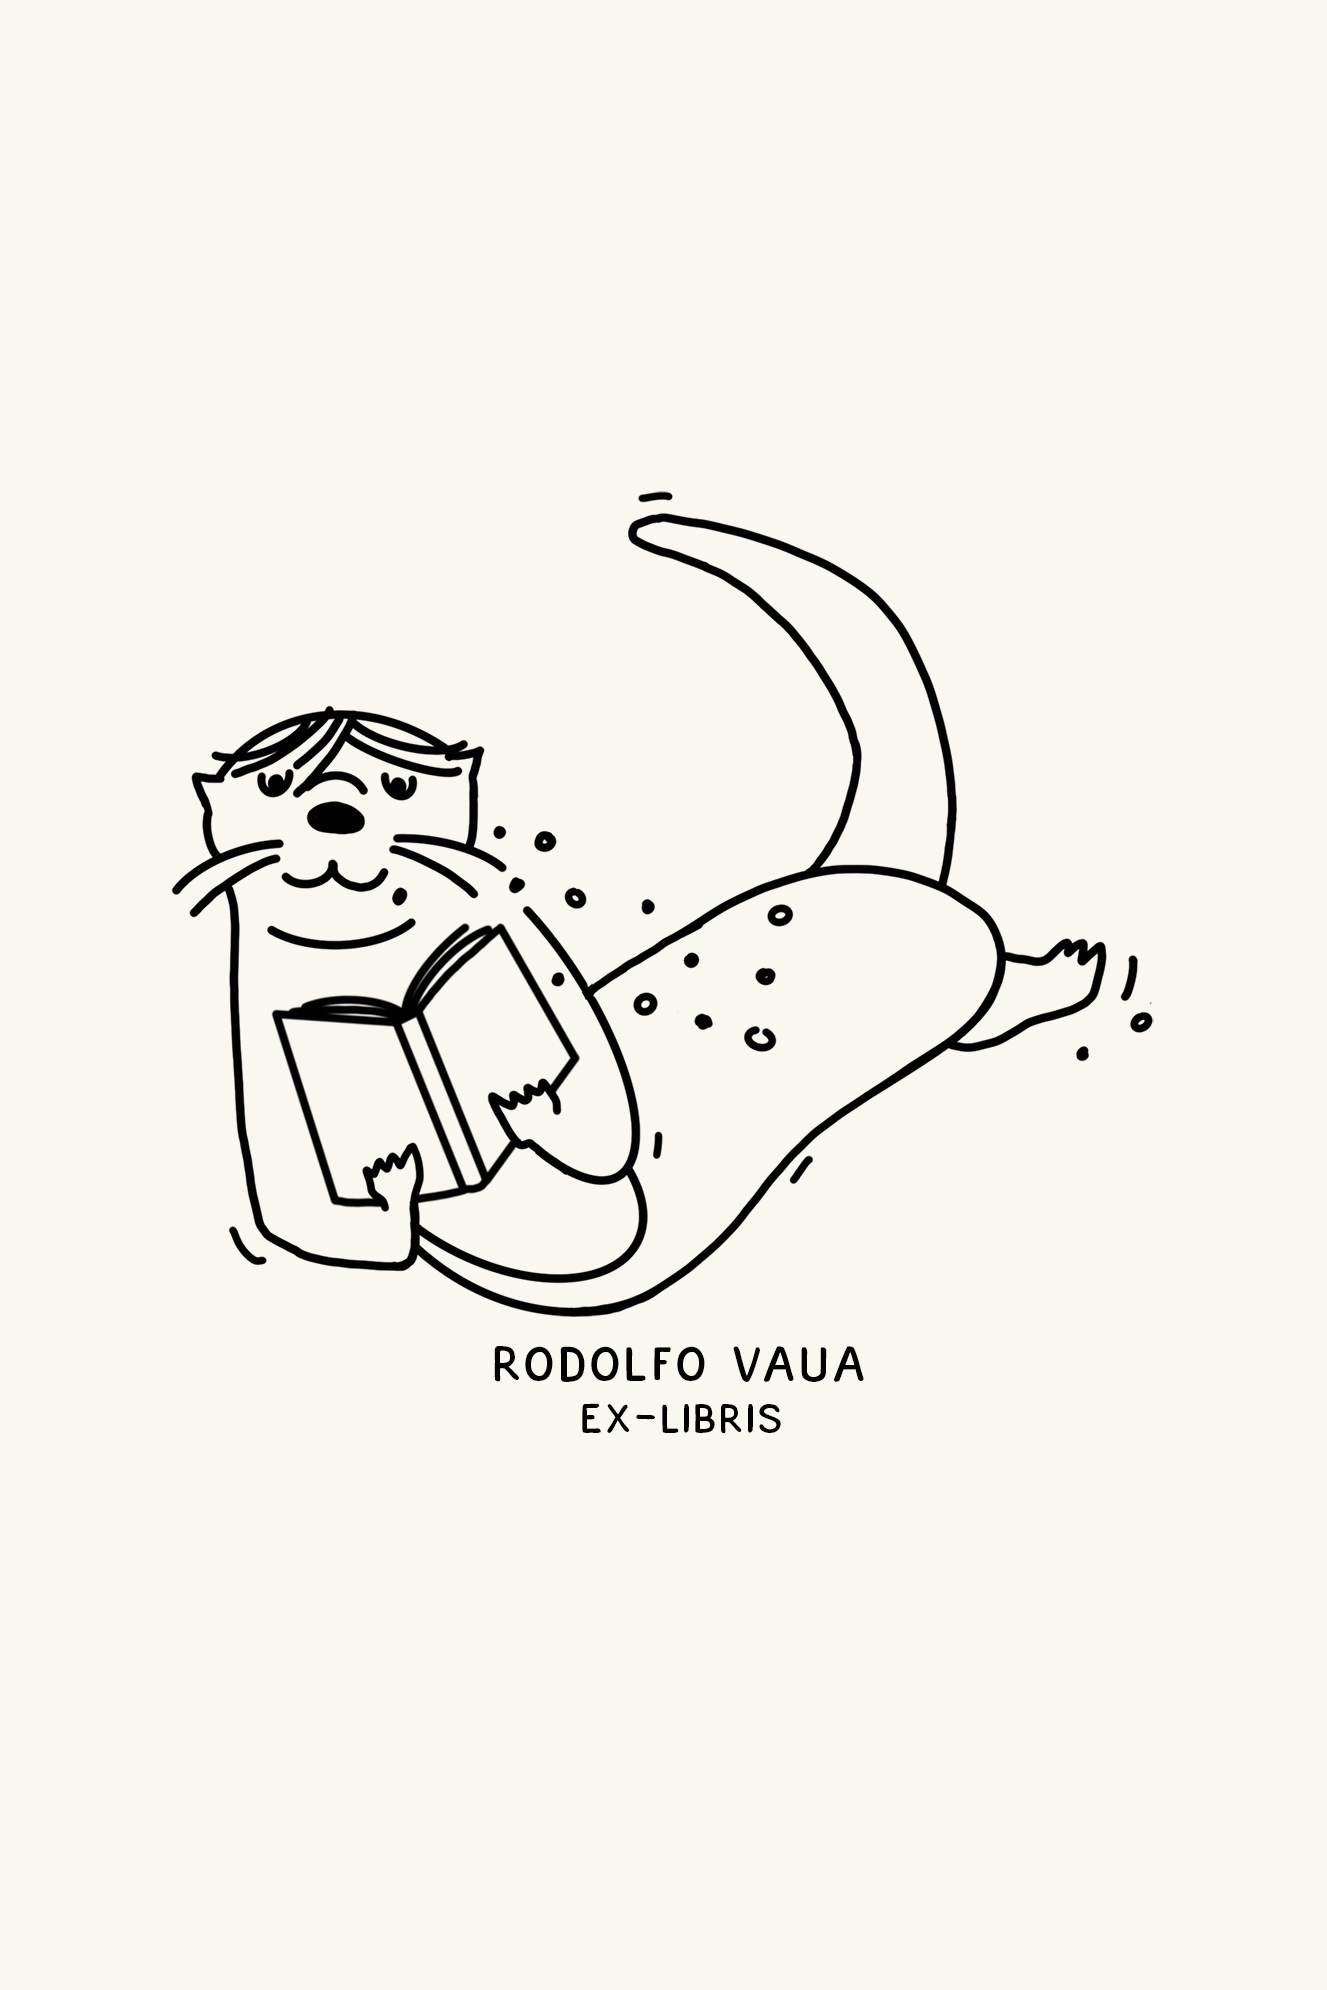 Dibujo lineal de una nutria antropomorfa con gafas, tumbada boca arriba y leyendo un libro con el texto "Ex-libris Nutria lectora" debajo de Les Tampons de Roser.